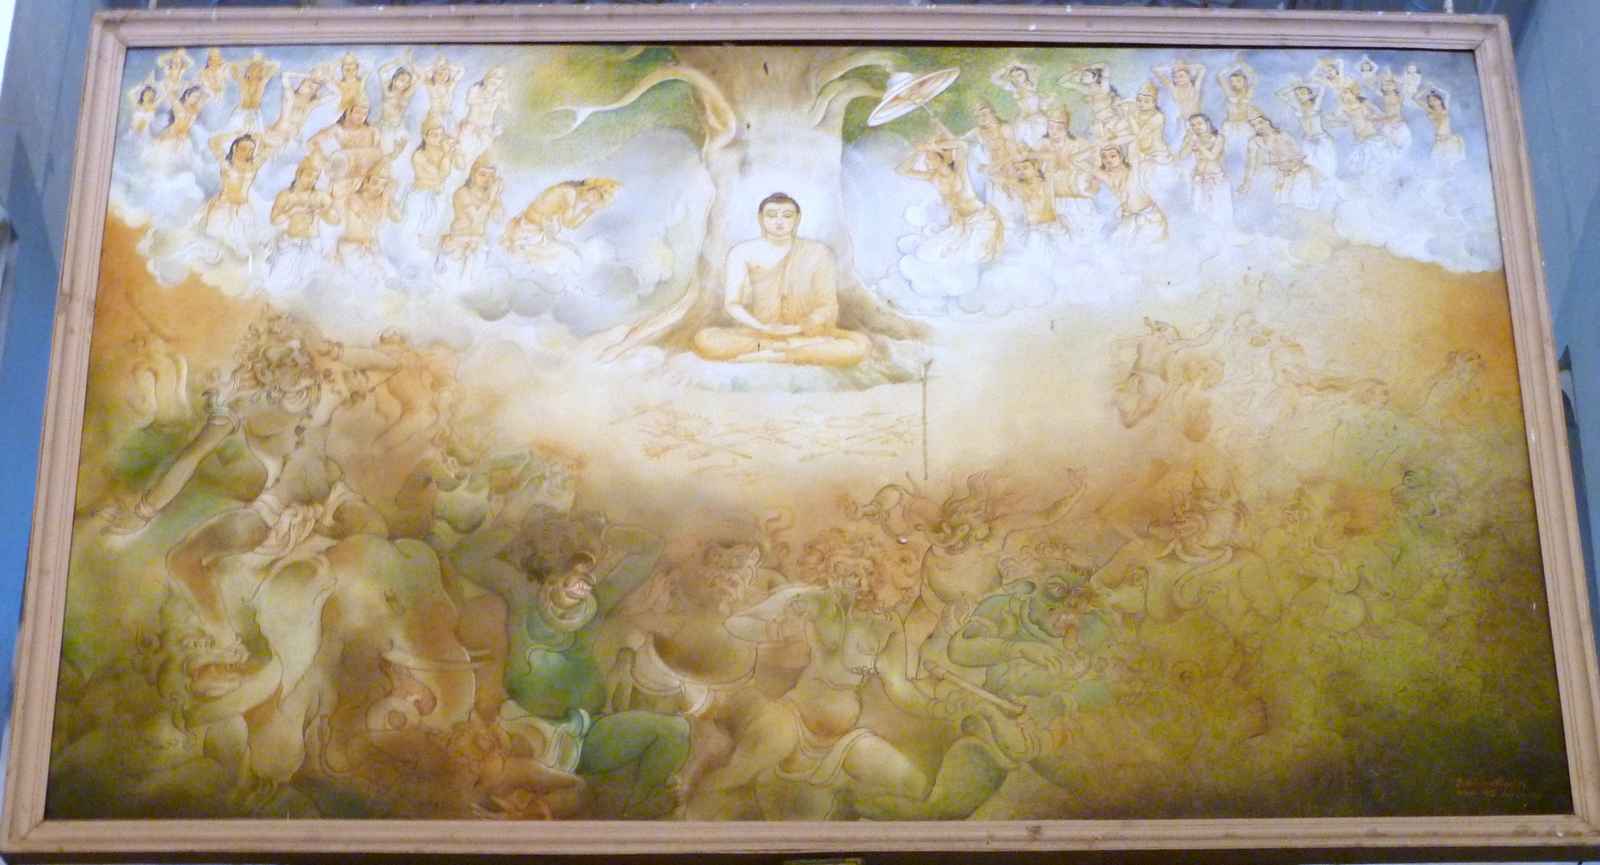 Książe Siddartha, asceta który usiadł pod Drzewem Asvattha Bodi doznaje wielkiego Oświecenia i staje się Gouthama Budda